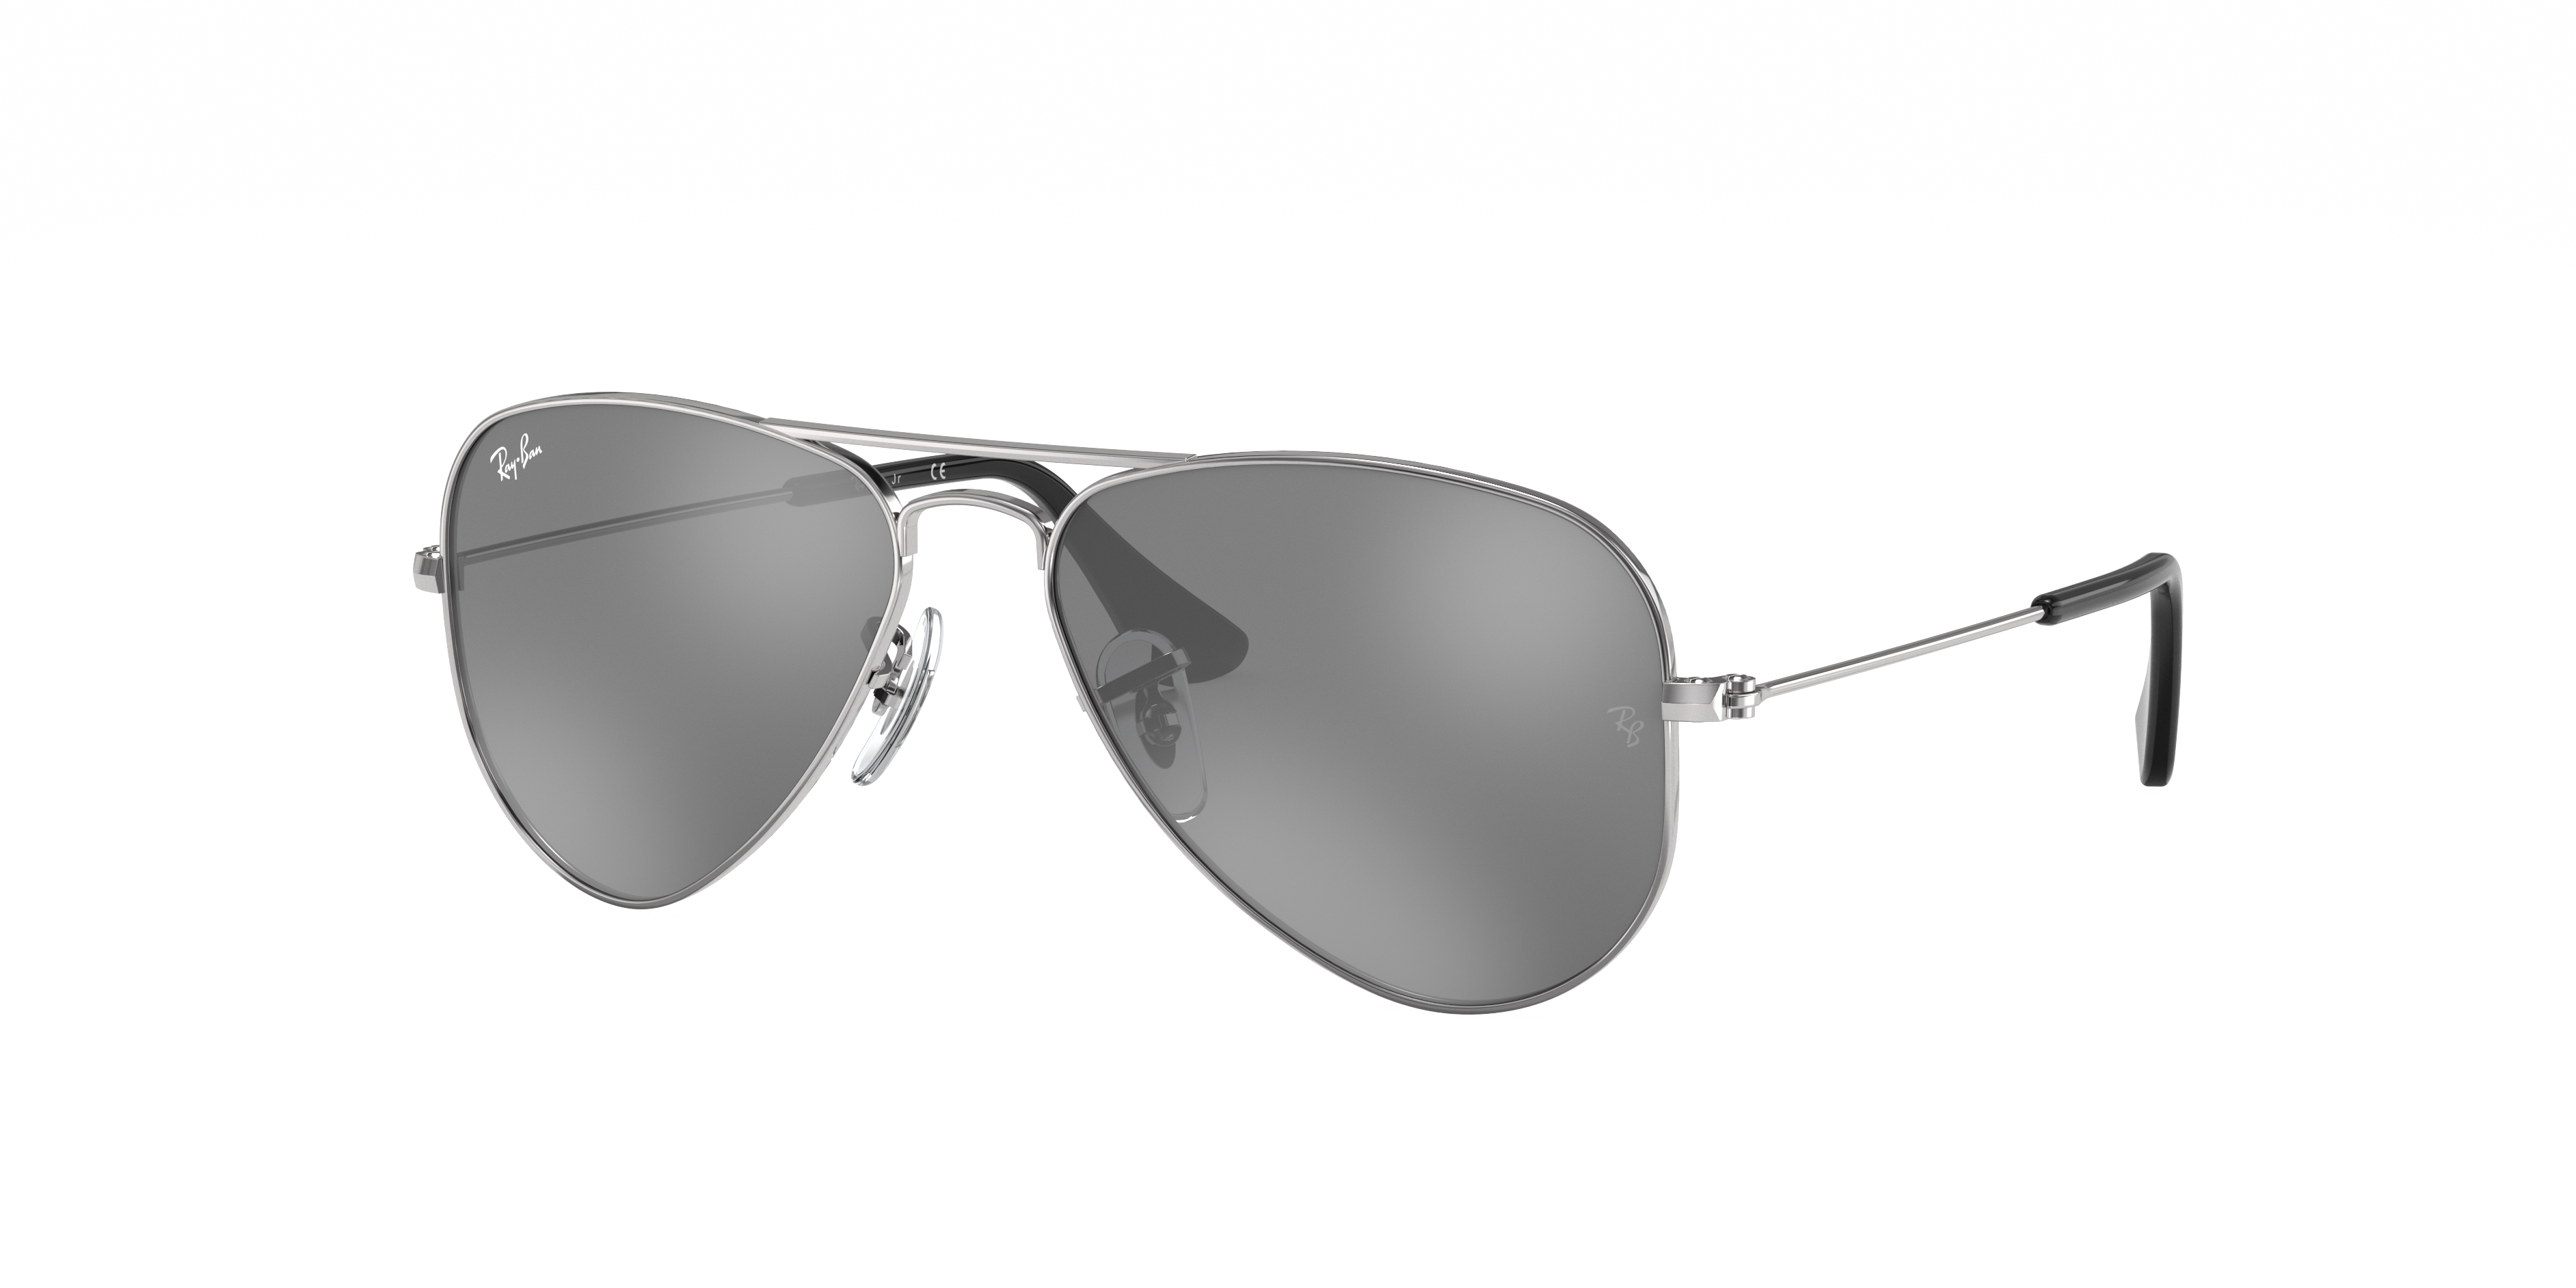 Óculos de Sol Ray-Ban estilo aviator.